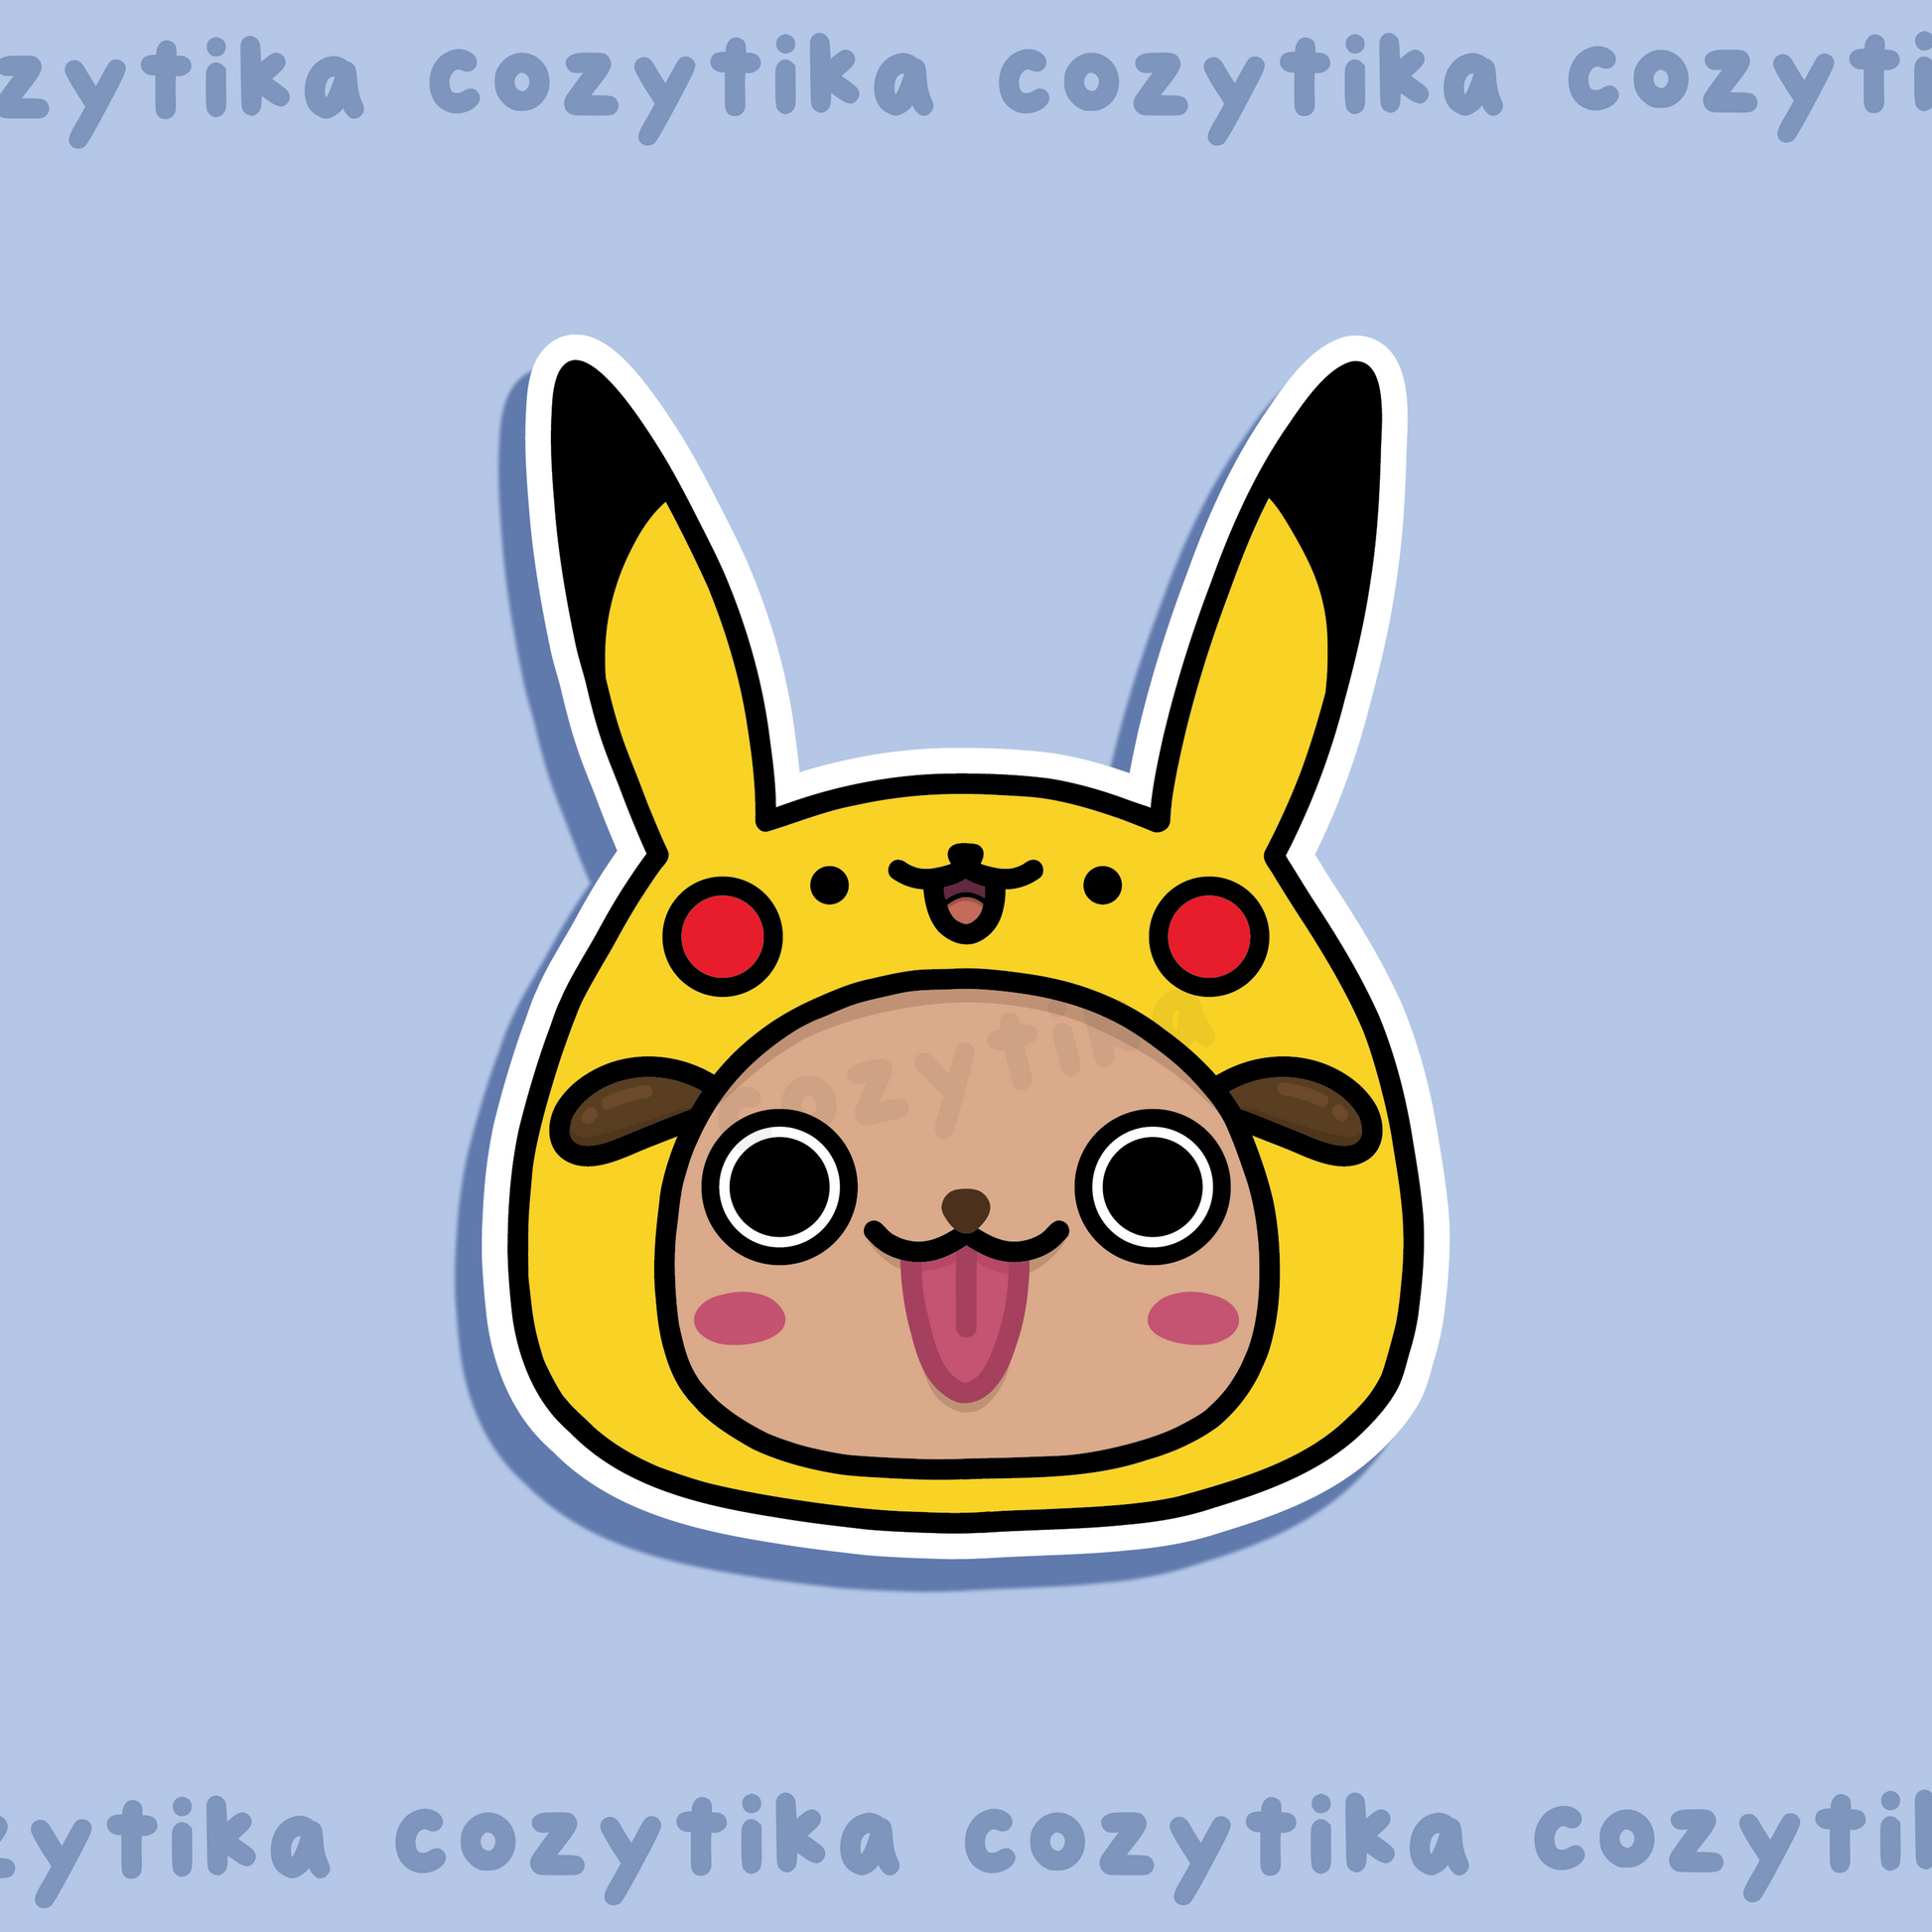 Dog wearing pikachu hat sticker graphic